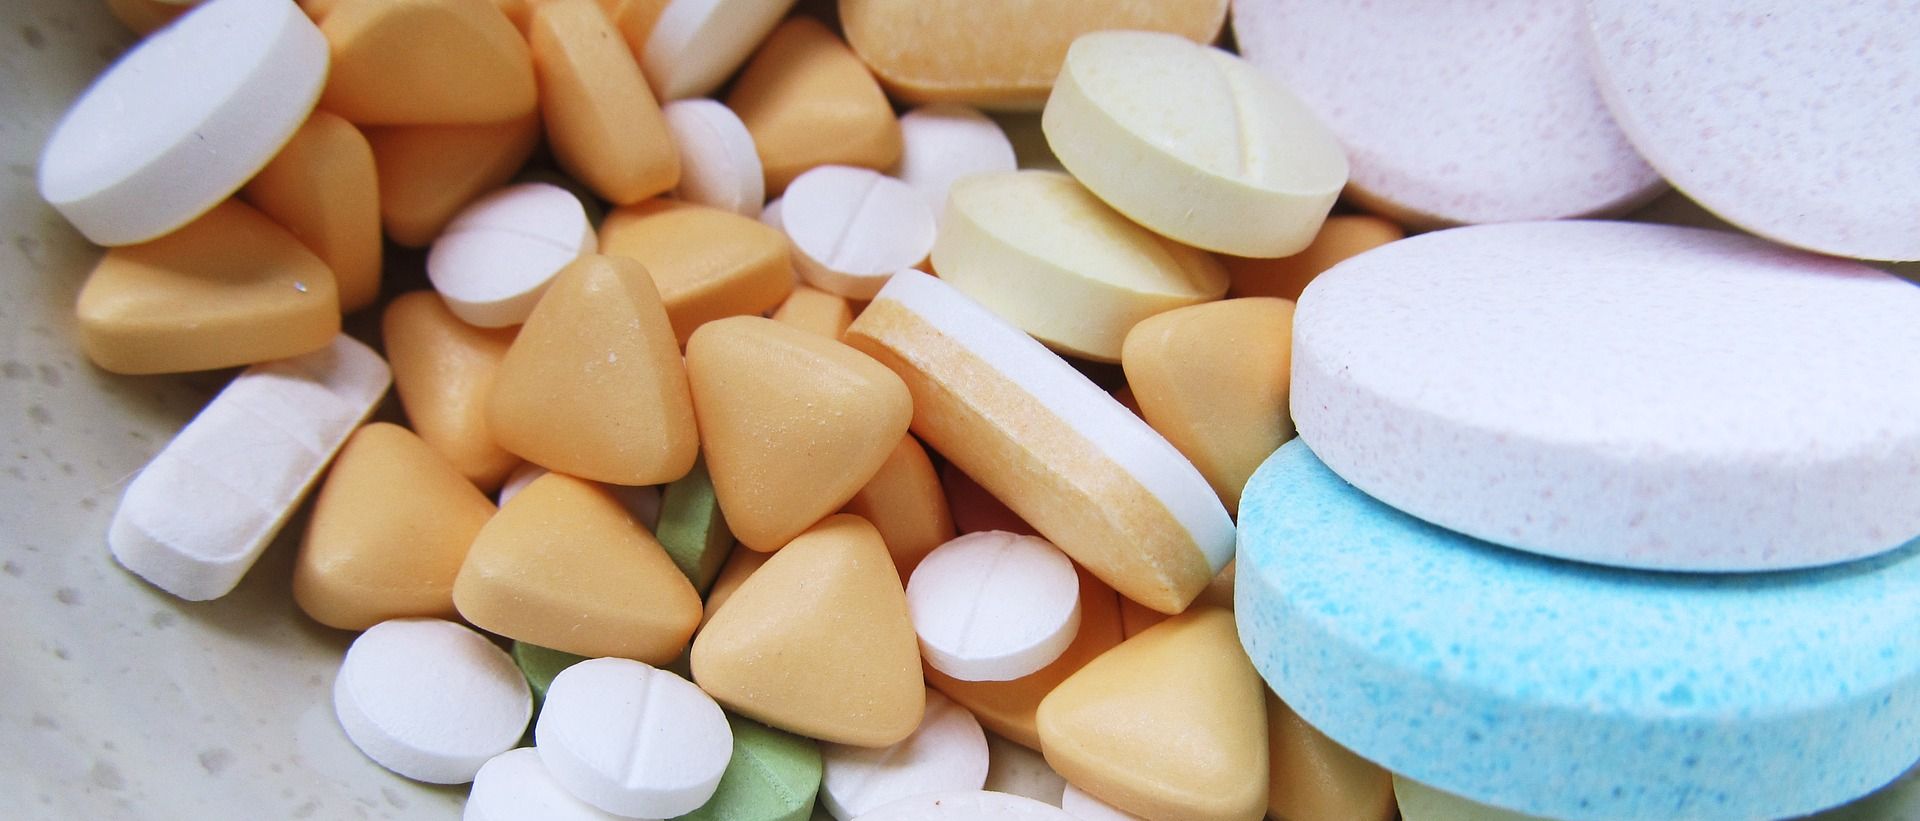 INDIJA U listopadu zaplijenjeno više od 20 milijuna ilegalnih tableta Mandrax